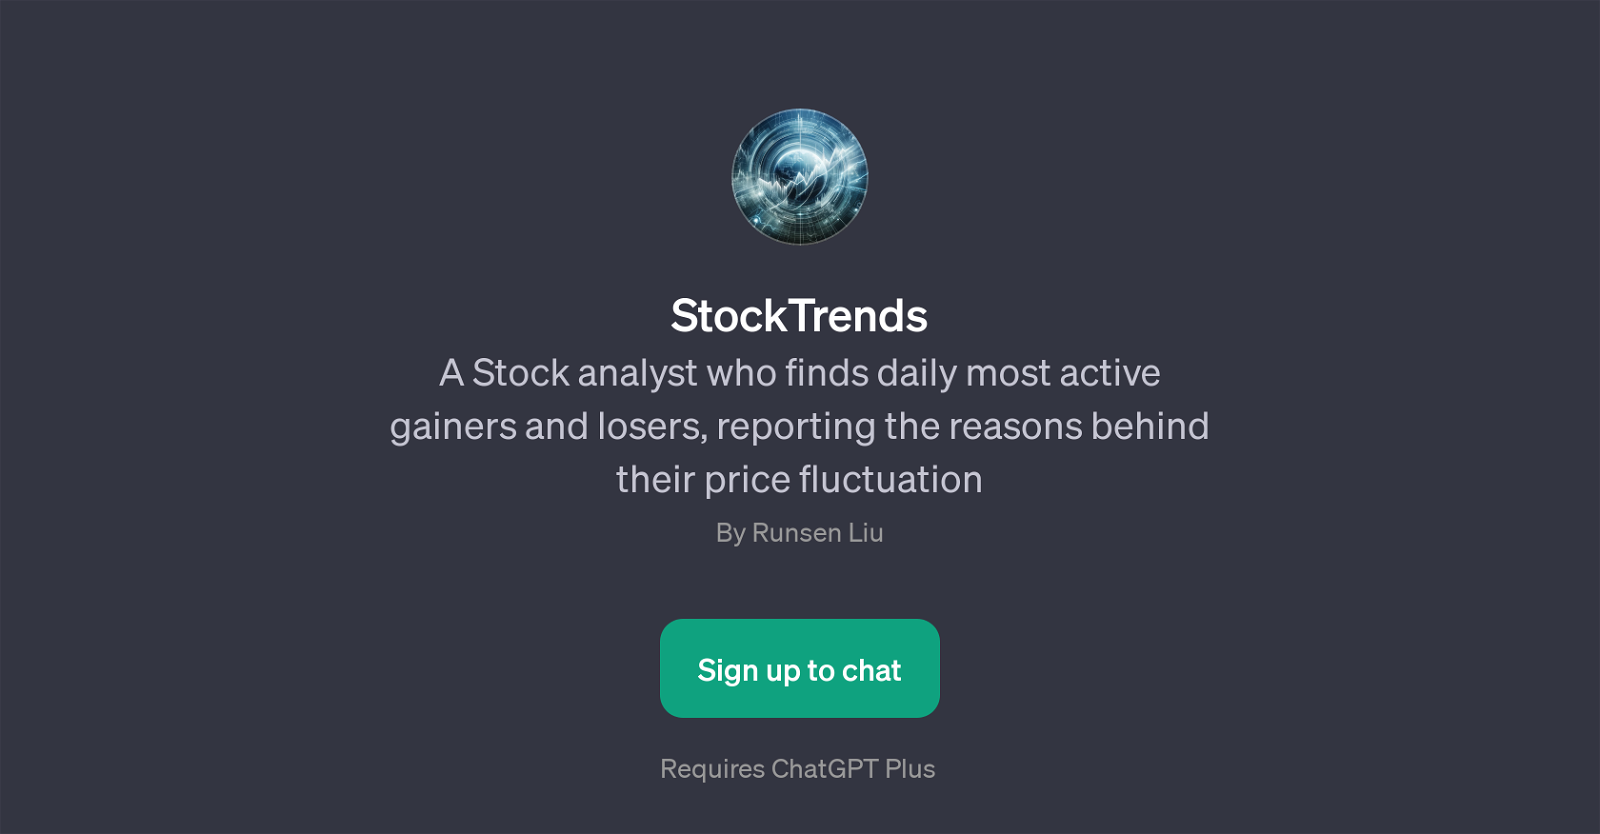 StockTrends website